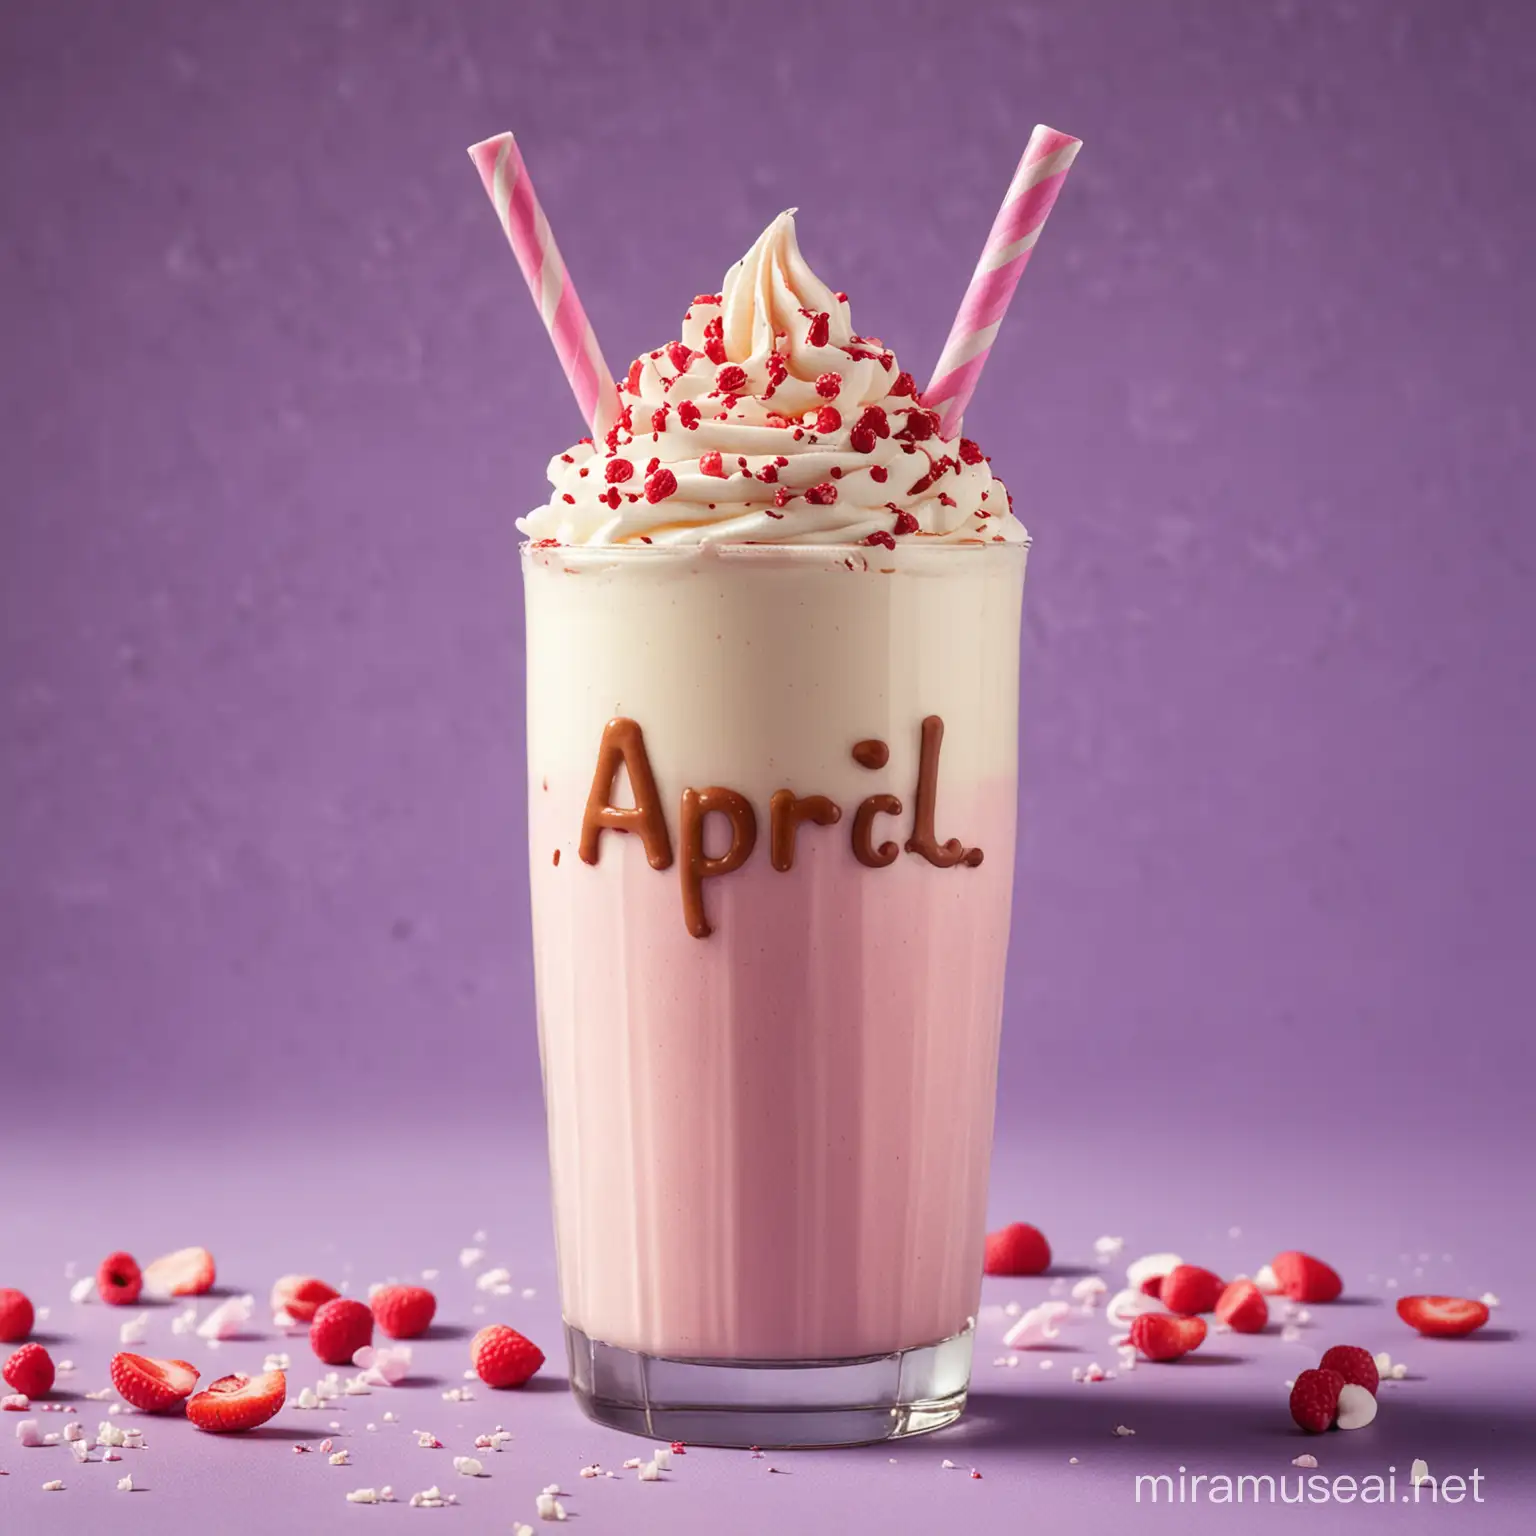 Milkshake representing the month of april